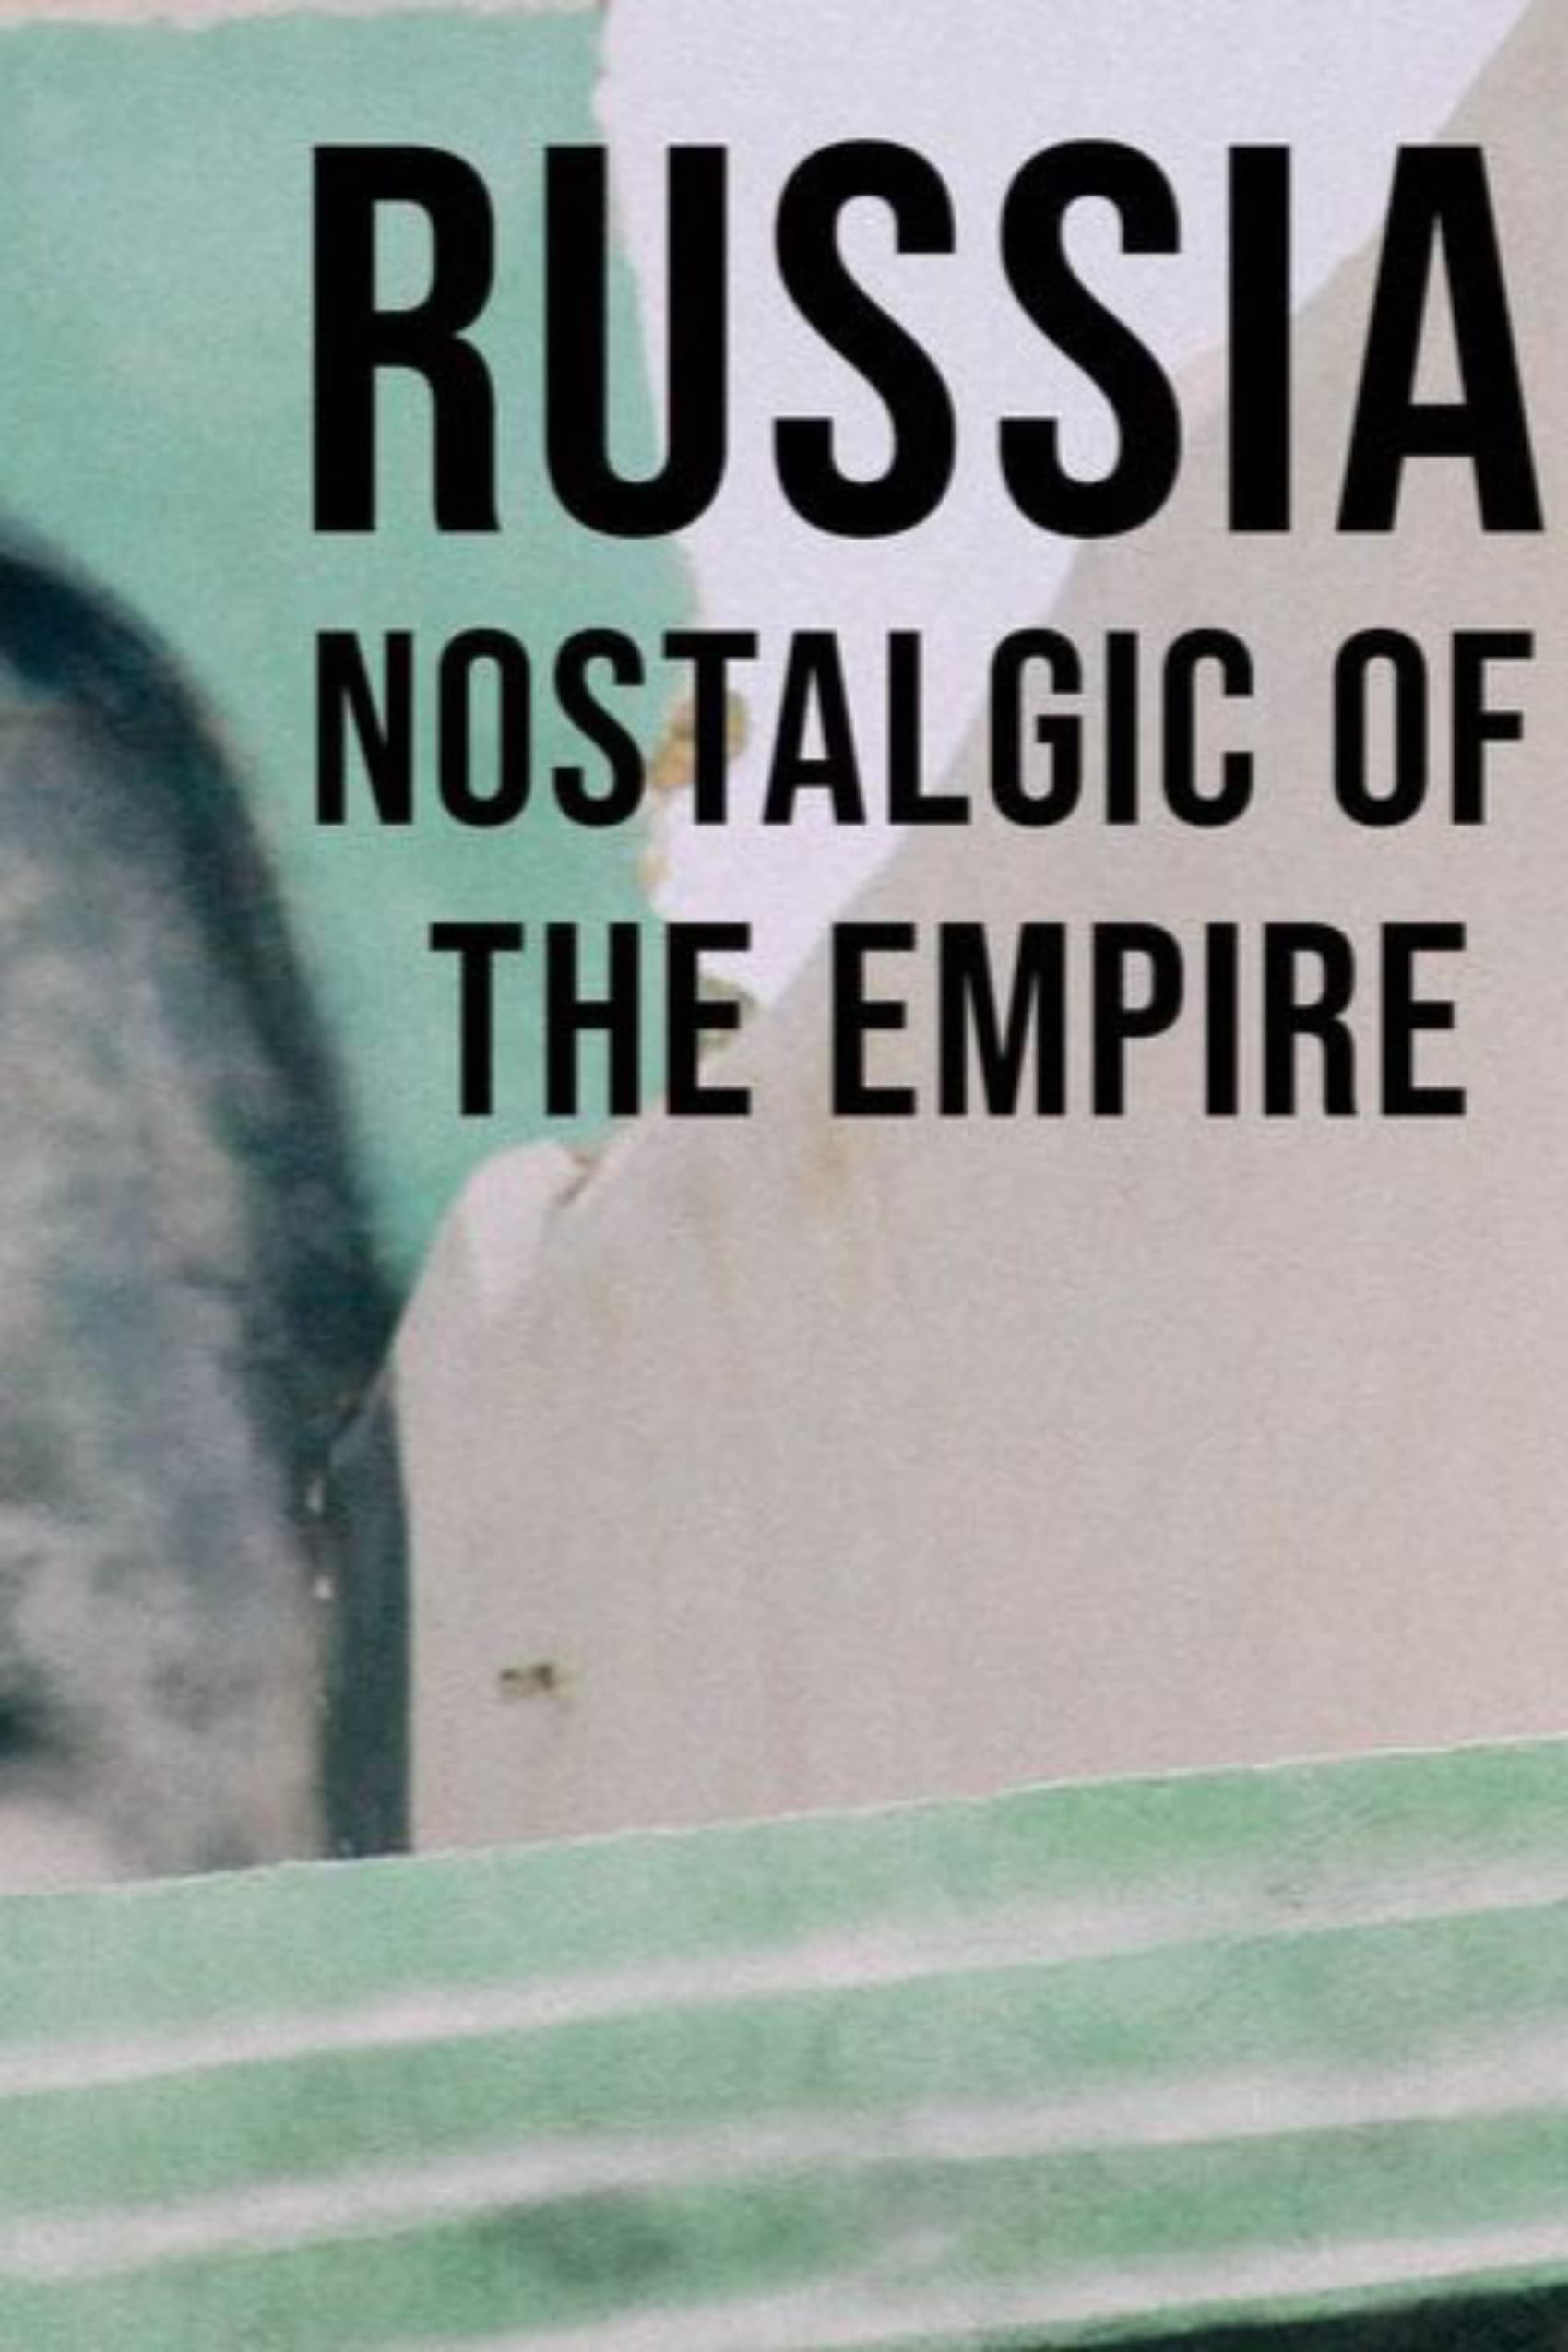 Russia, Nostalgic for the Empire